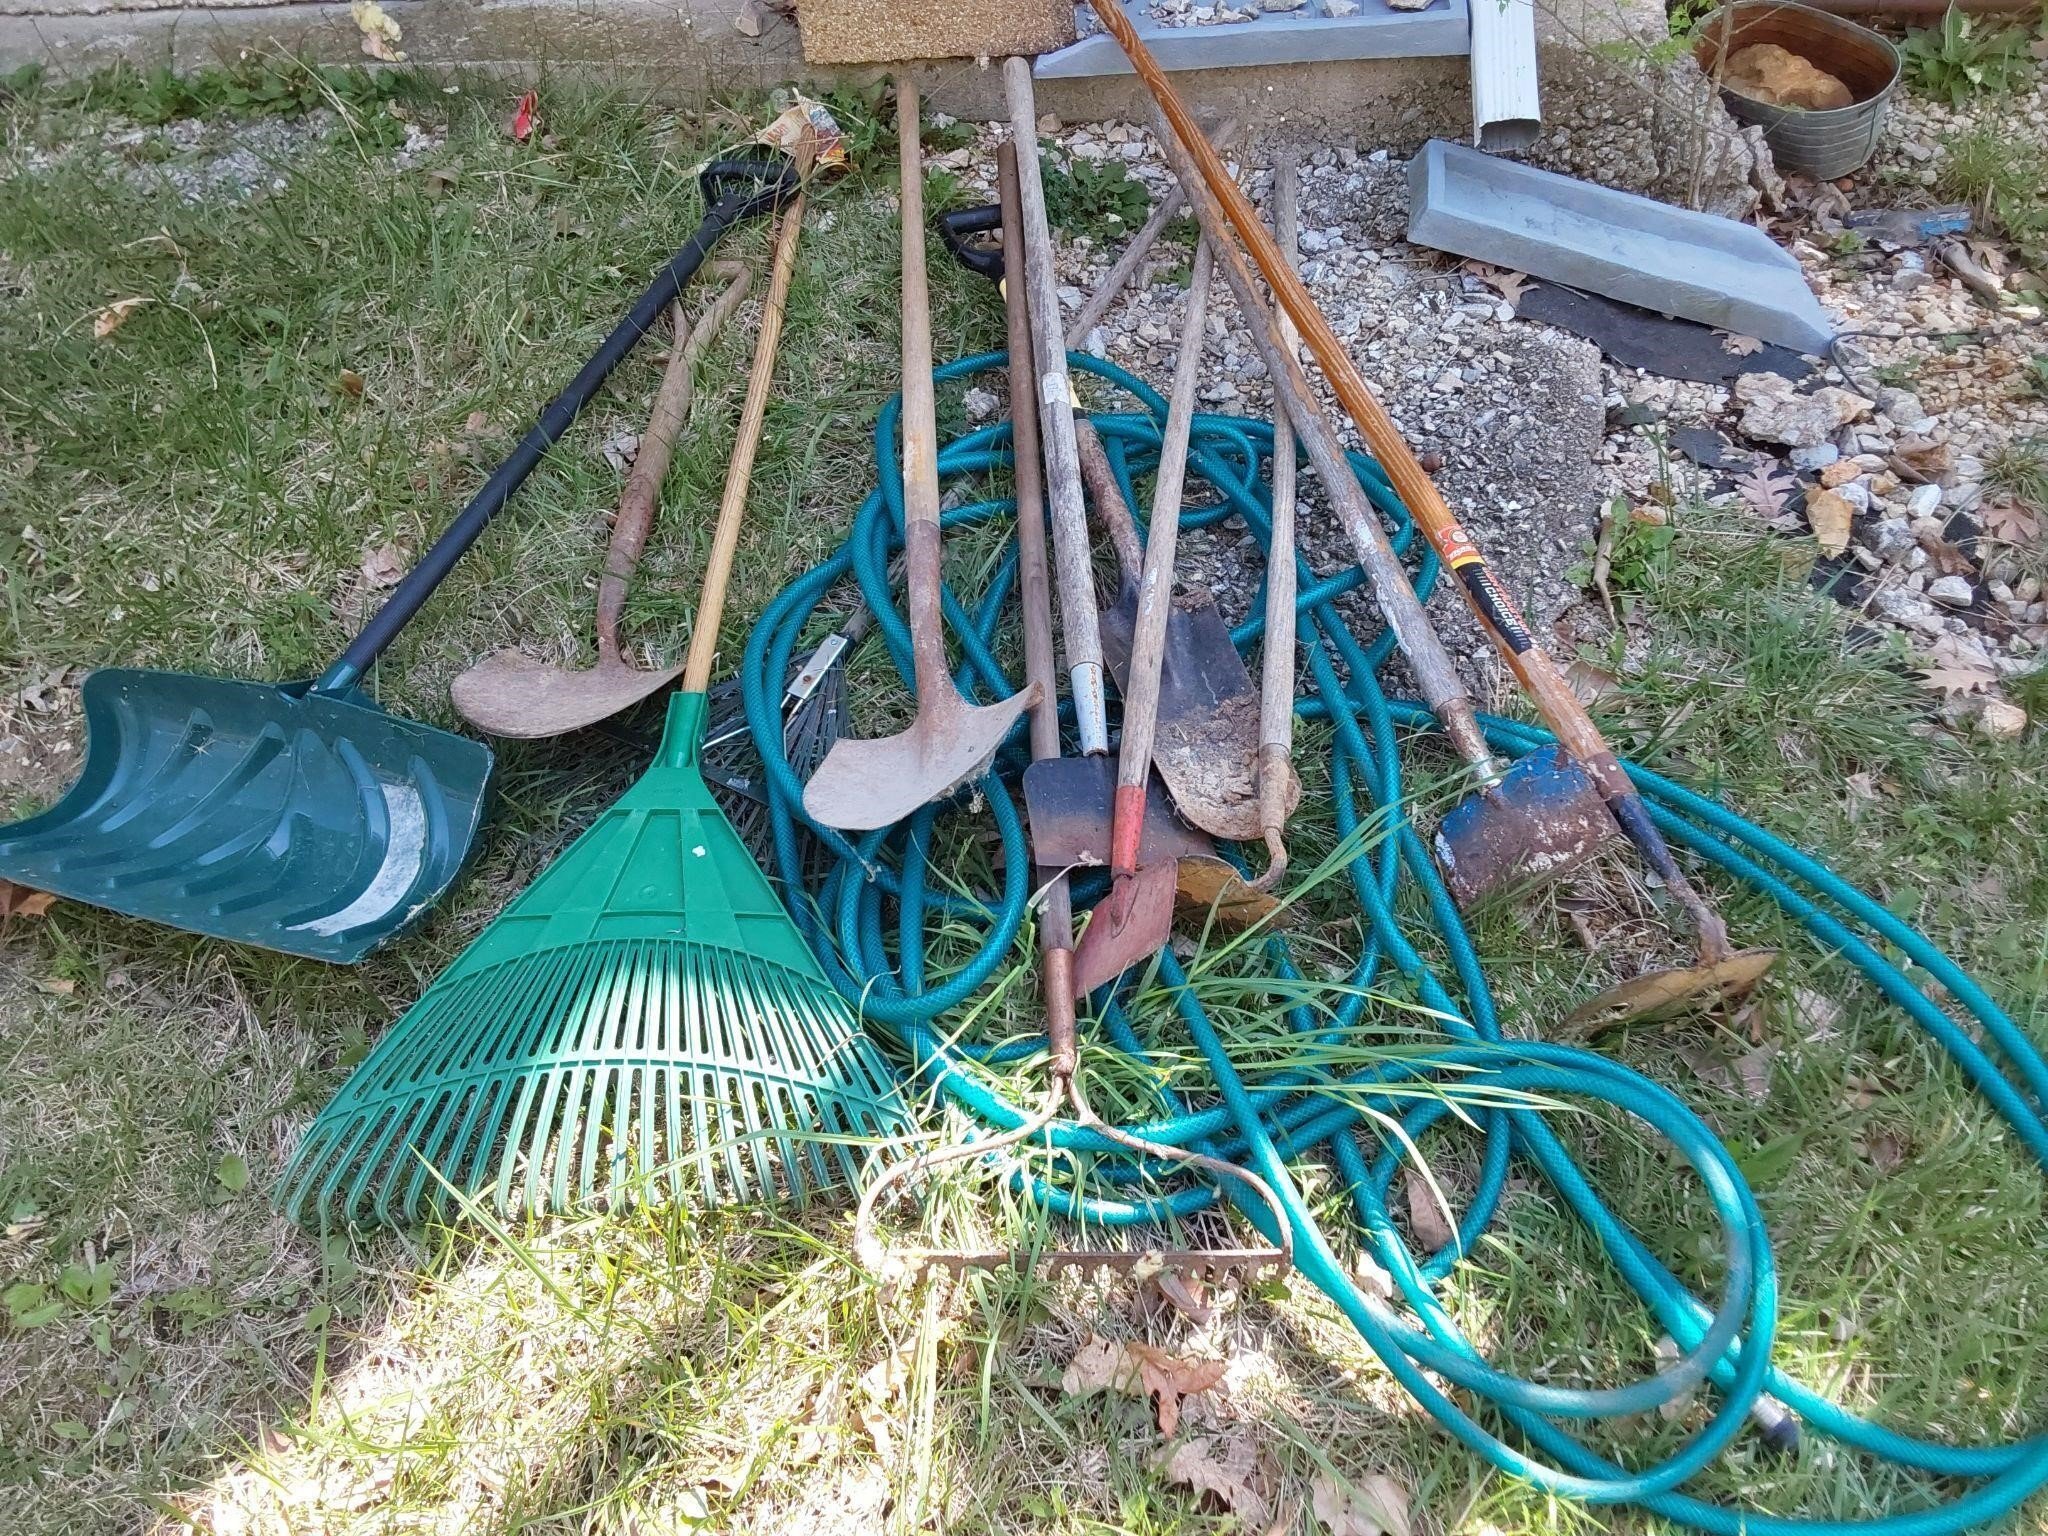 Yard tools and hose